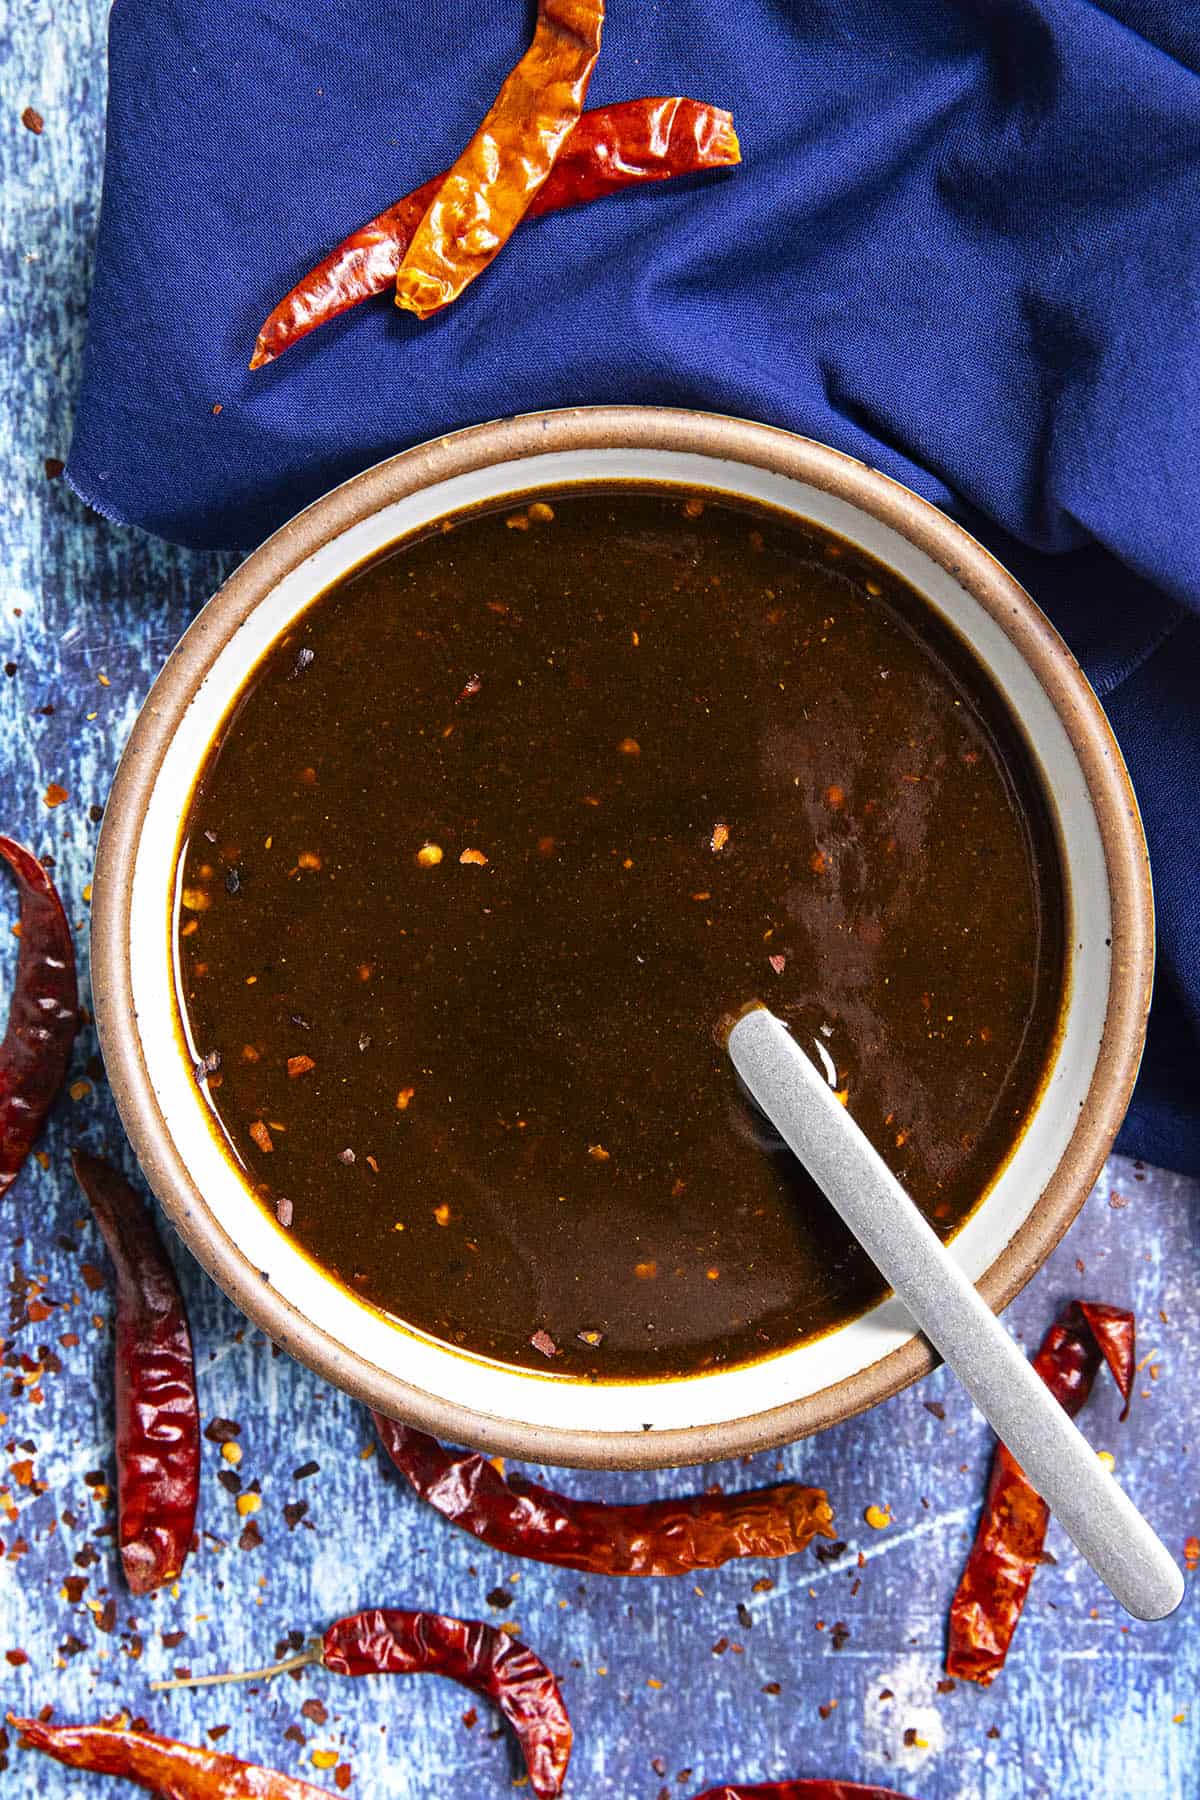 Szechuan Sauce in a bowl